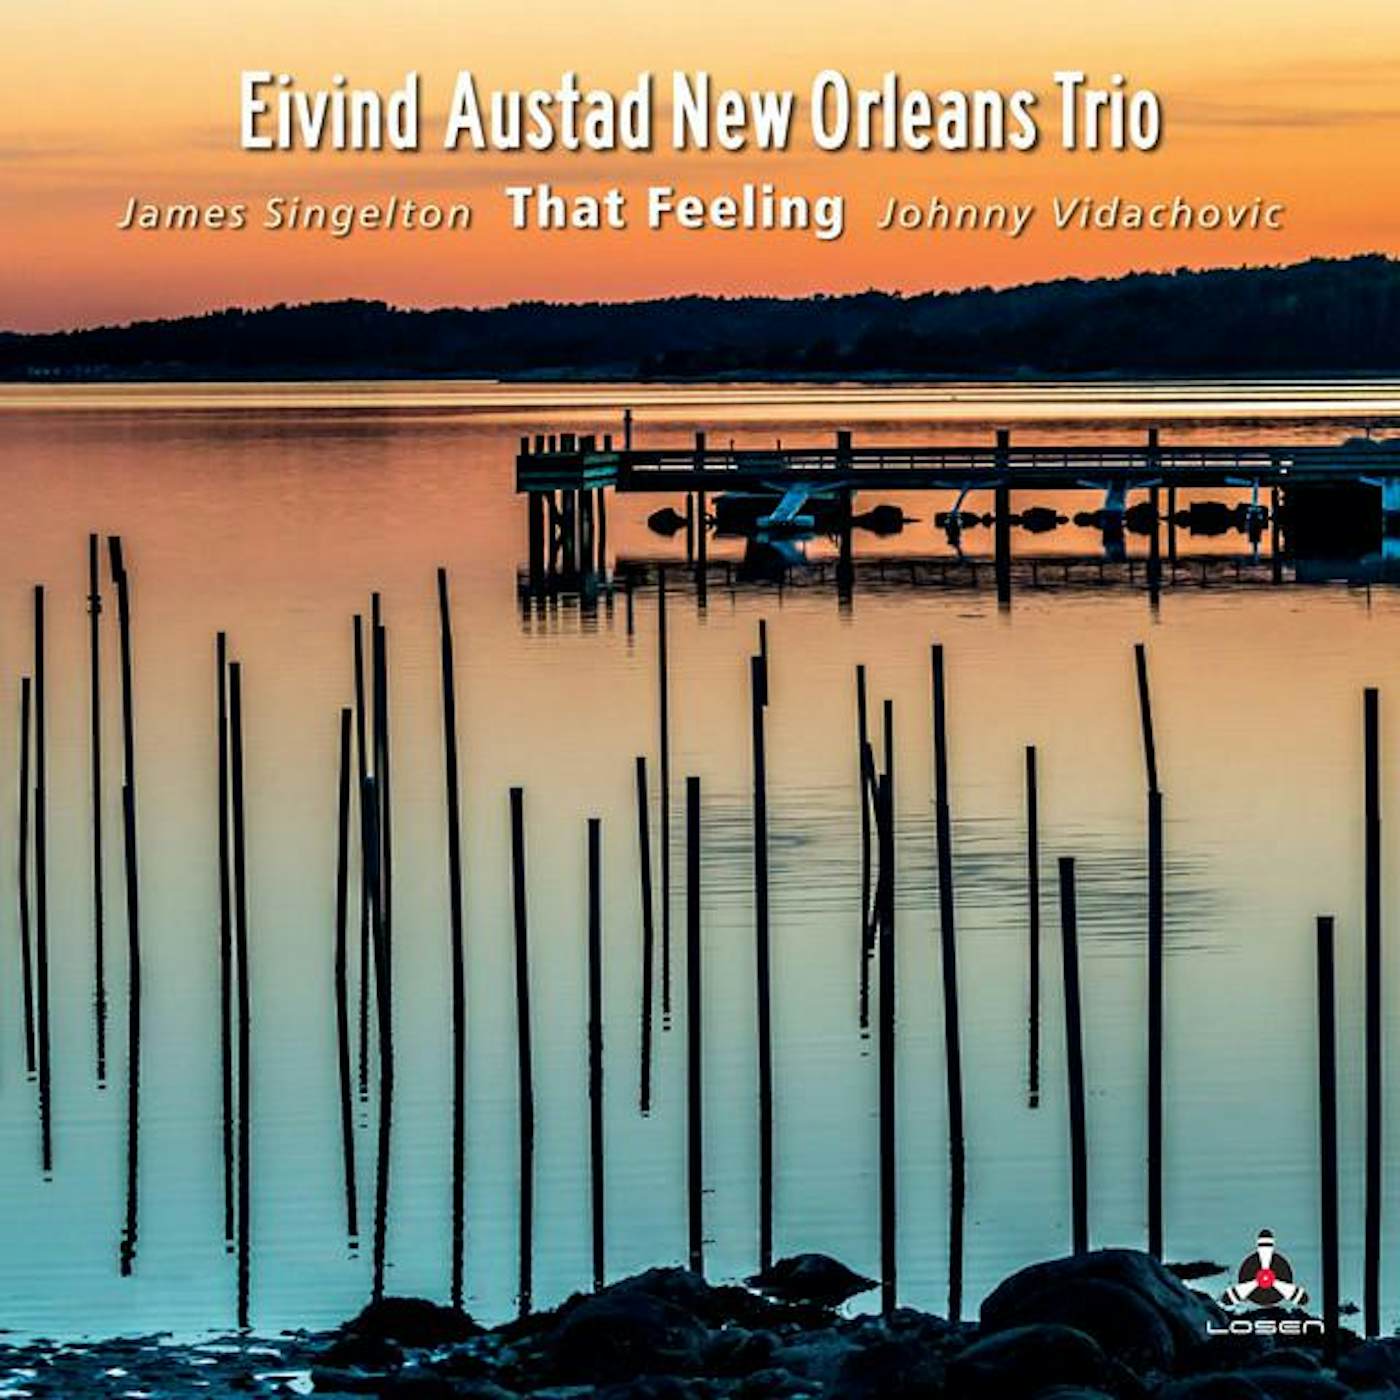 Eivind Austad New Orleans Trio